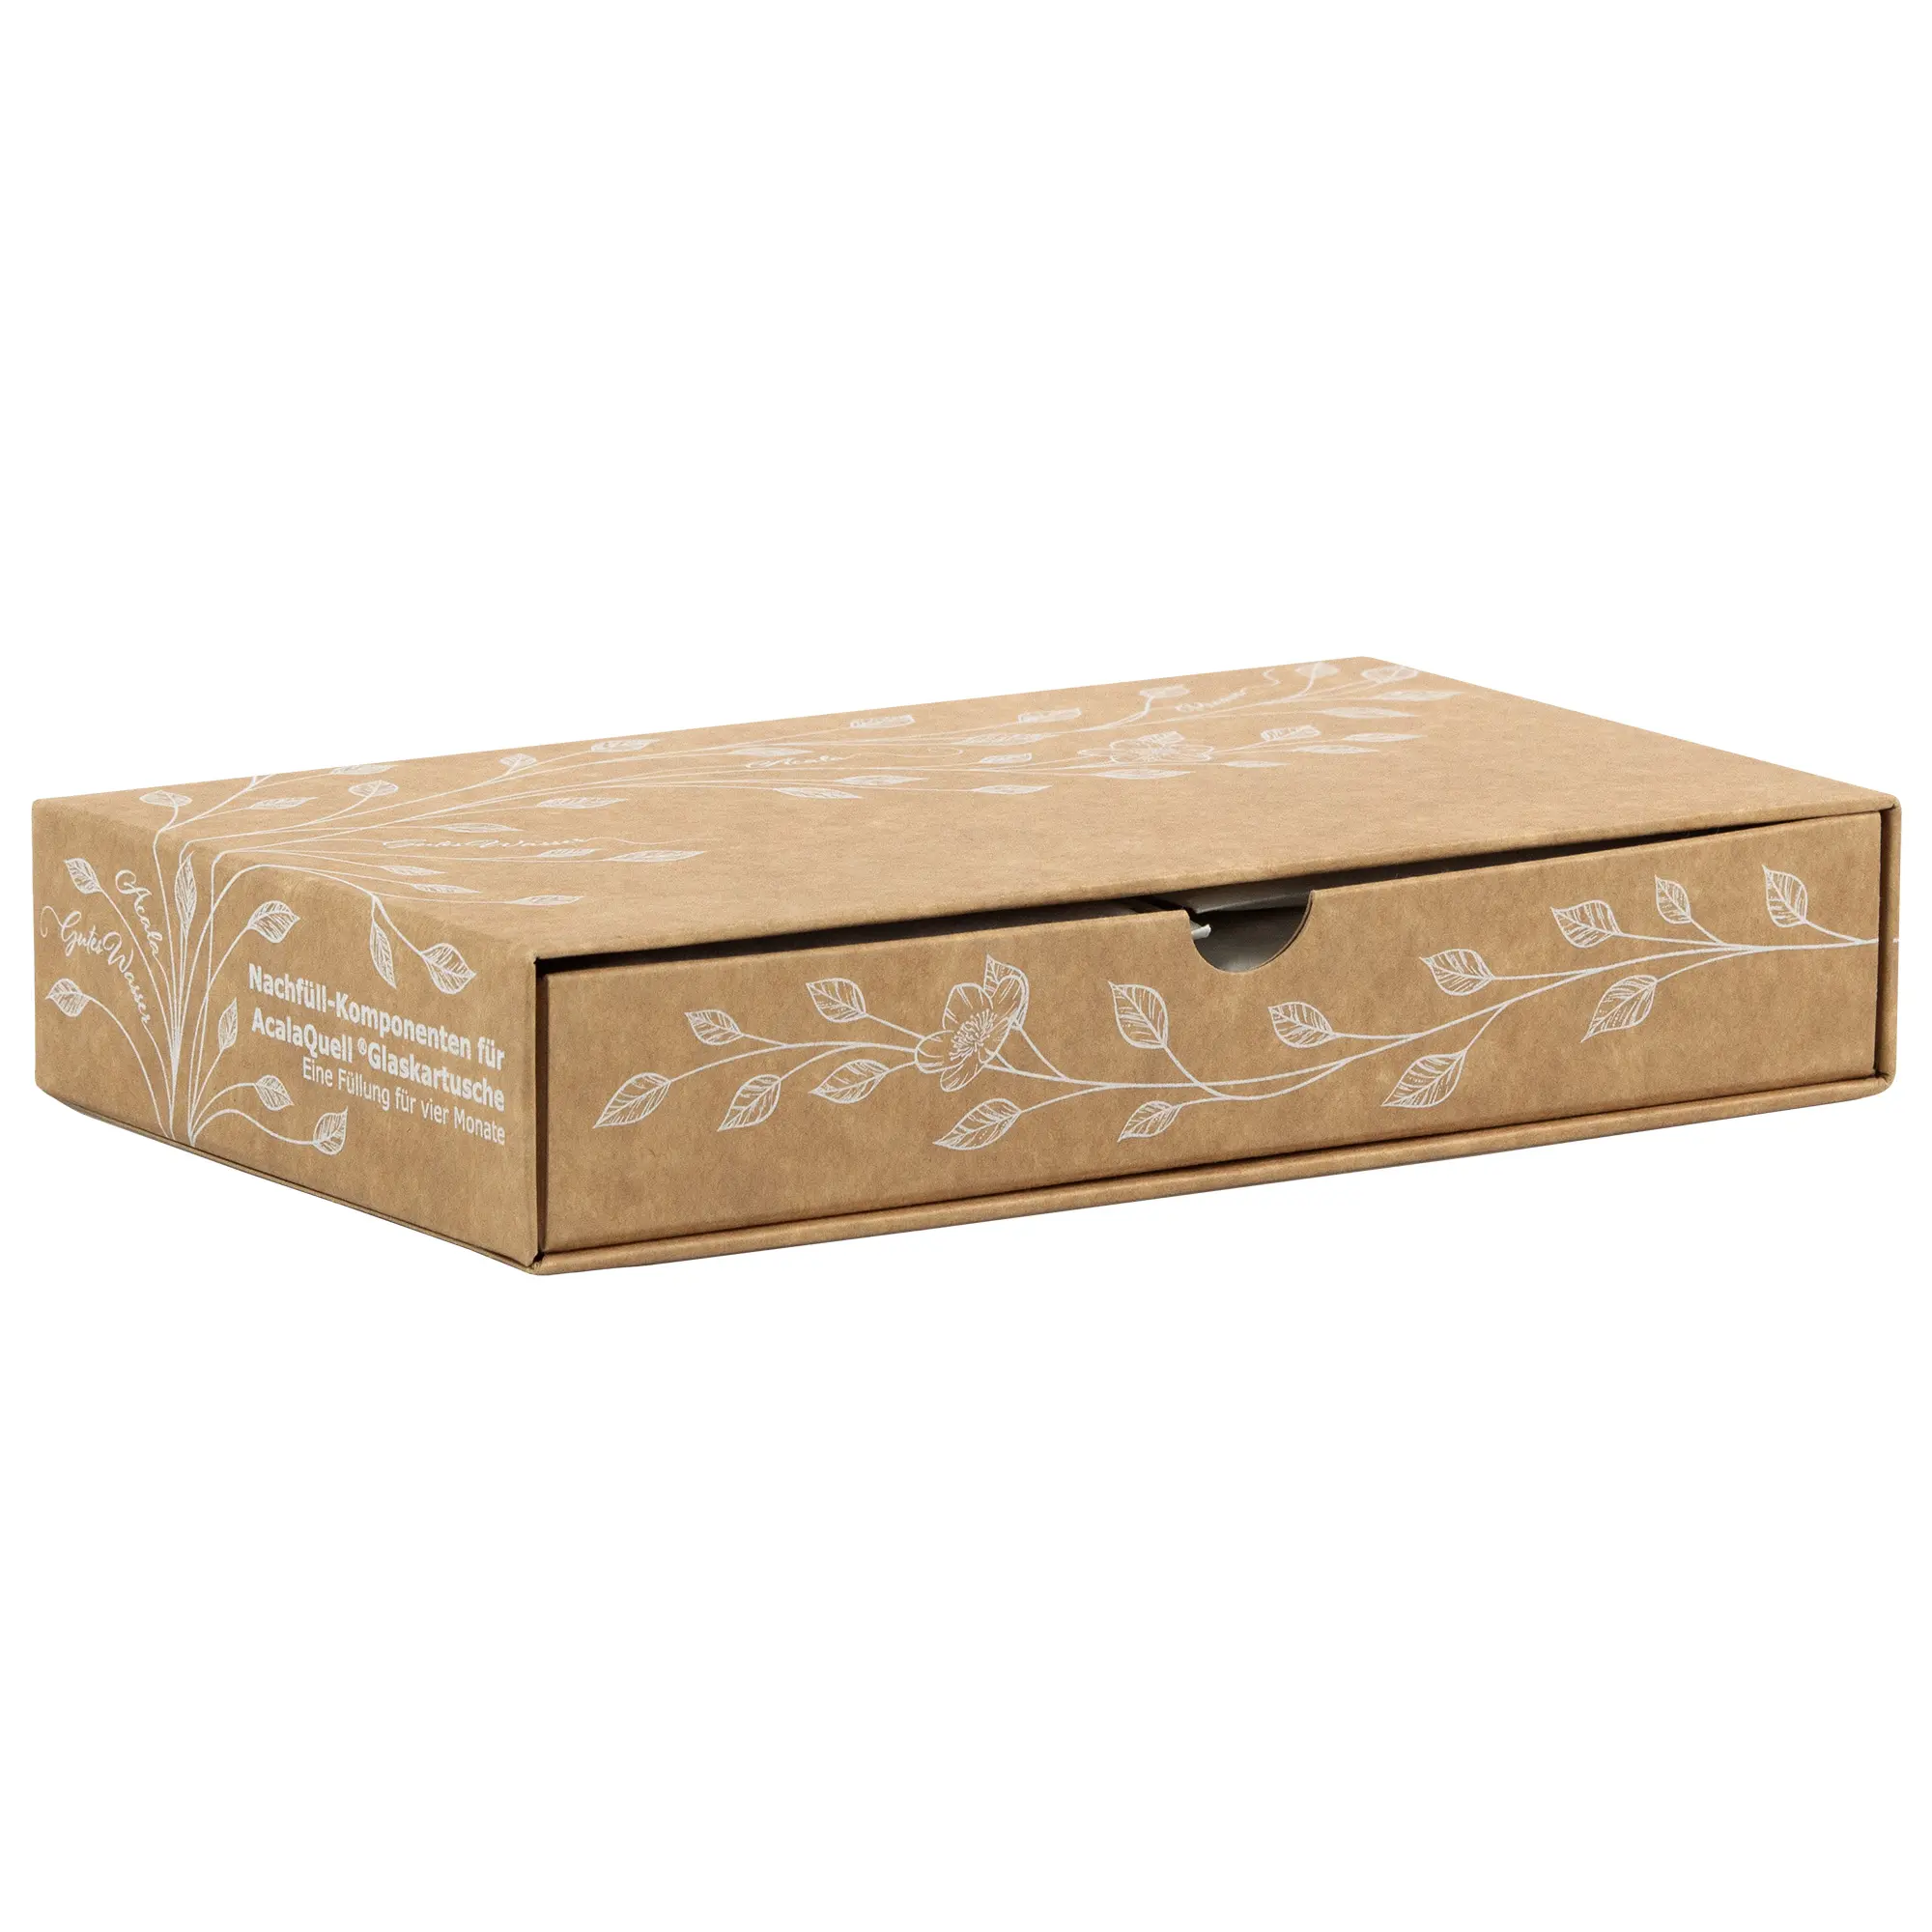 Man sieht die Verpackung für die ReNaWa Nachfüll-Komponenten für 4 Monate. Der Karton ist Naturbraun, bedruckt mit weißen Blätterranken und Infos zum Inhalt der Schubladenbox.